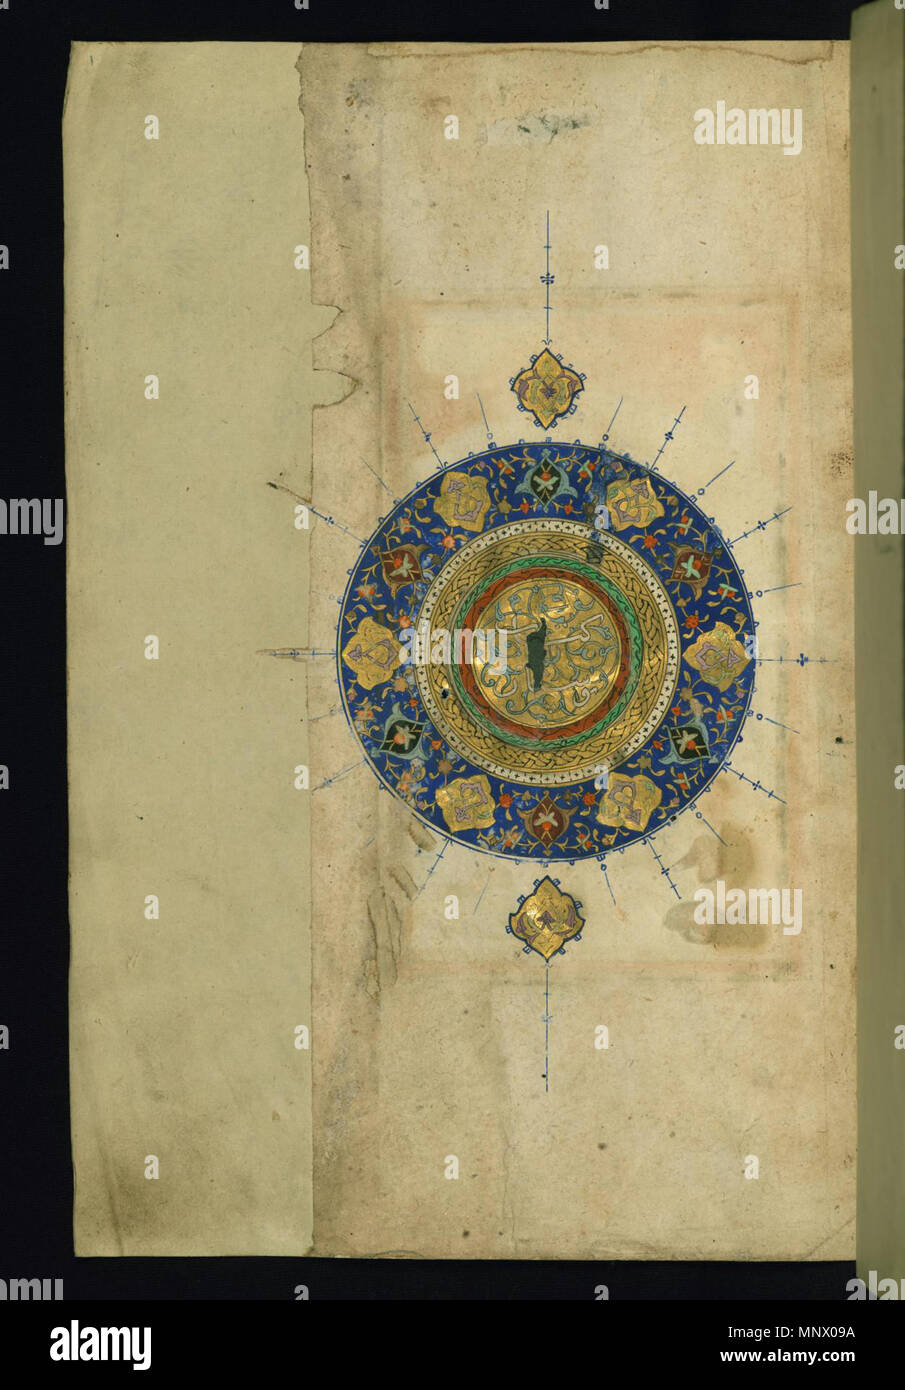 Allumé en frontispice à médaillon . Anglais : Ce allumé en frontispice de Walters manuscrit W.620 est inscrit avec l'intitulé Kitab-i bustan dans le médaillon en or et polychrome (shamsah). . 9e siècle AH/AD 15ème siècle (période safavide (1501-1722)). 1082 Sa'di - Allumé en Frontispice avec médaillon - Walters W6201A - Page complète Banque D'Images